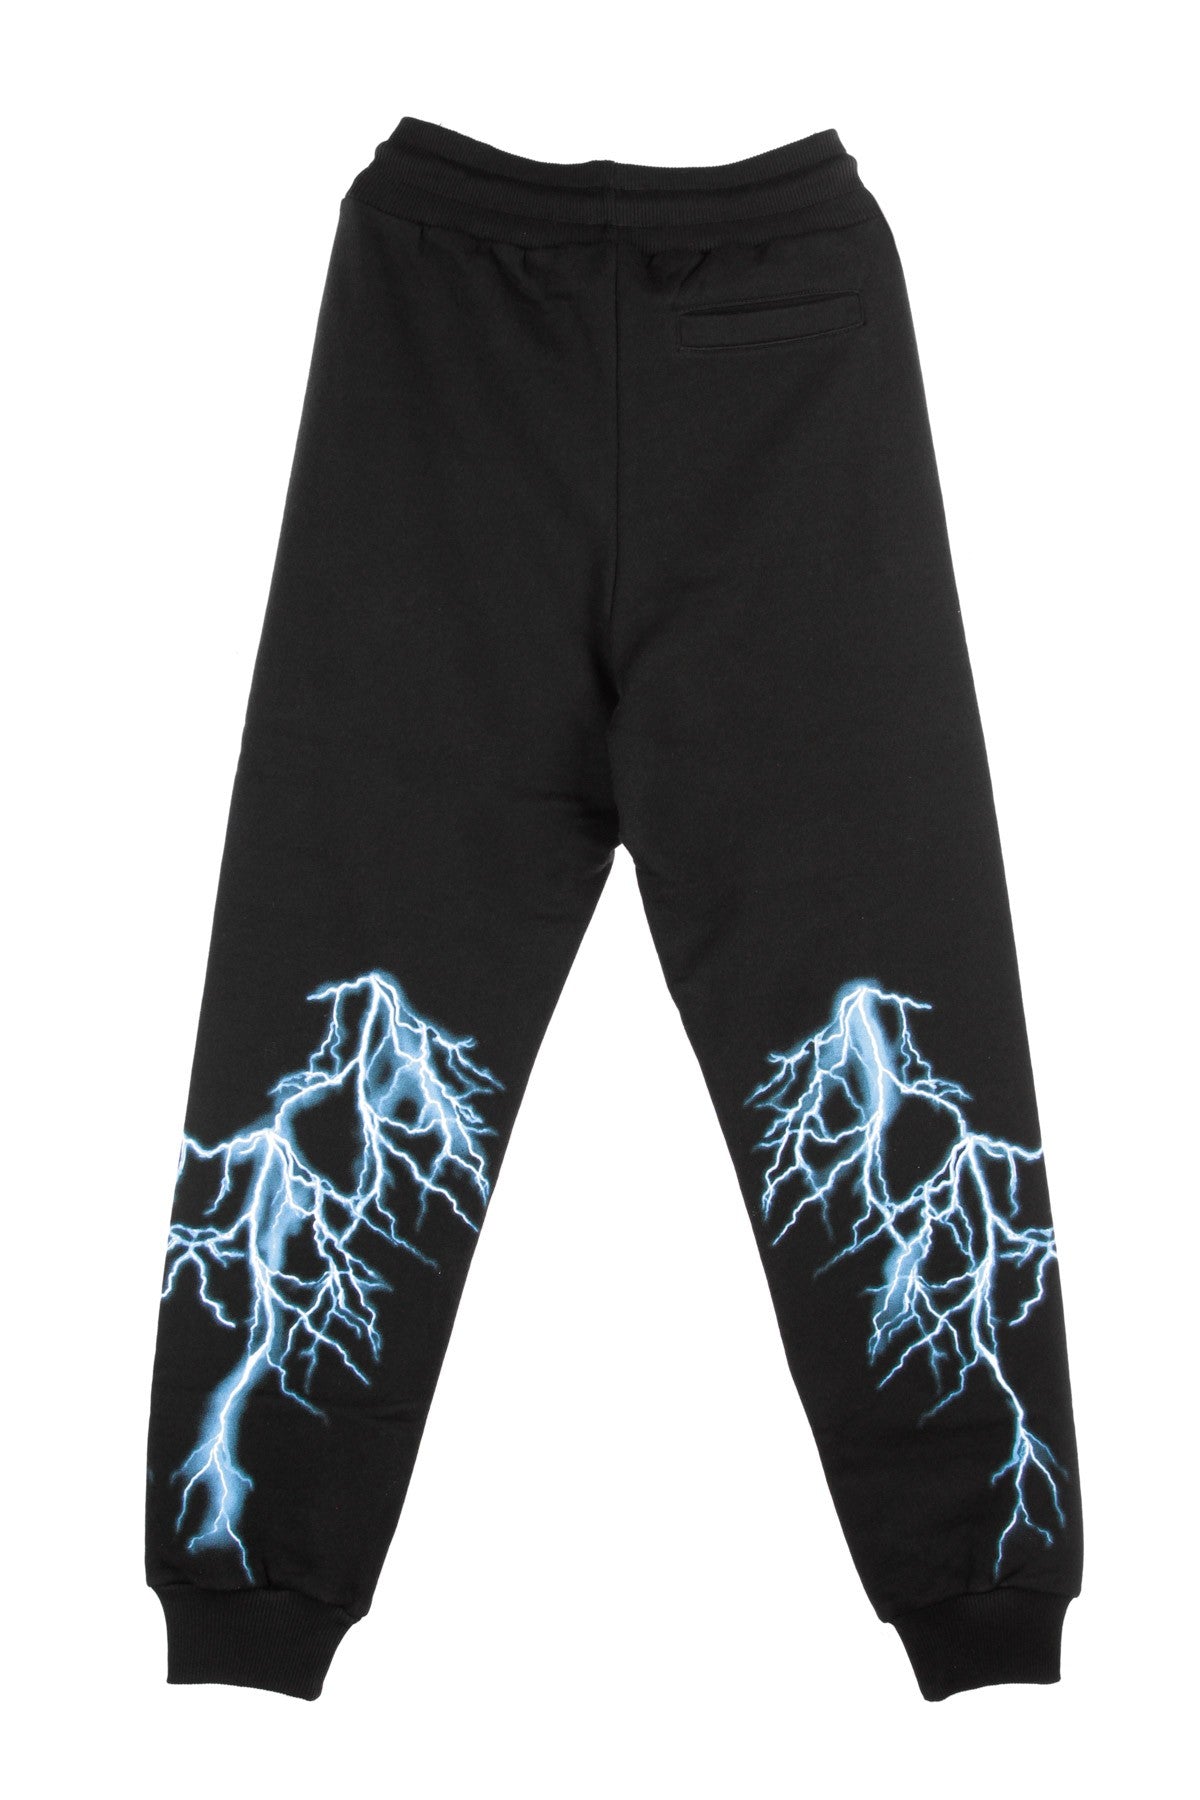 Phobia, Pantalone Tuta Leggero Uomo Light Blue Lightning Pants, Black/light Blue